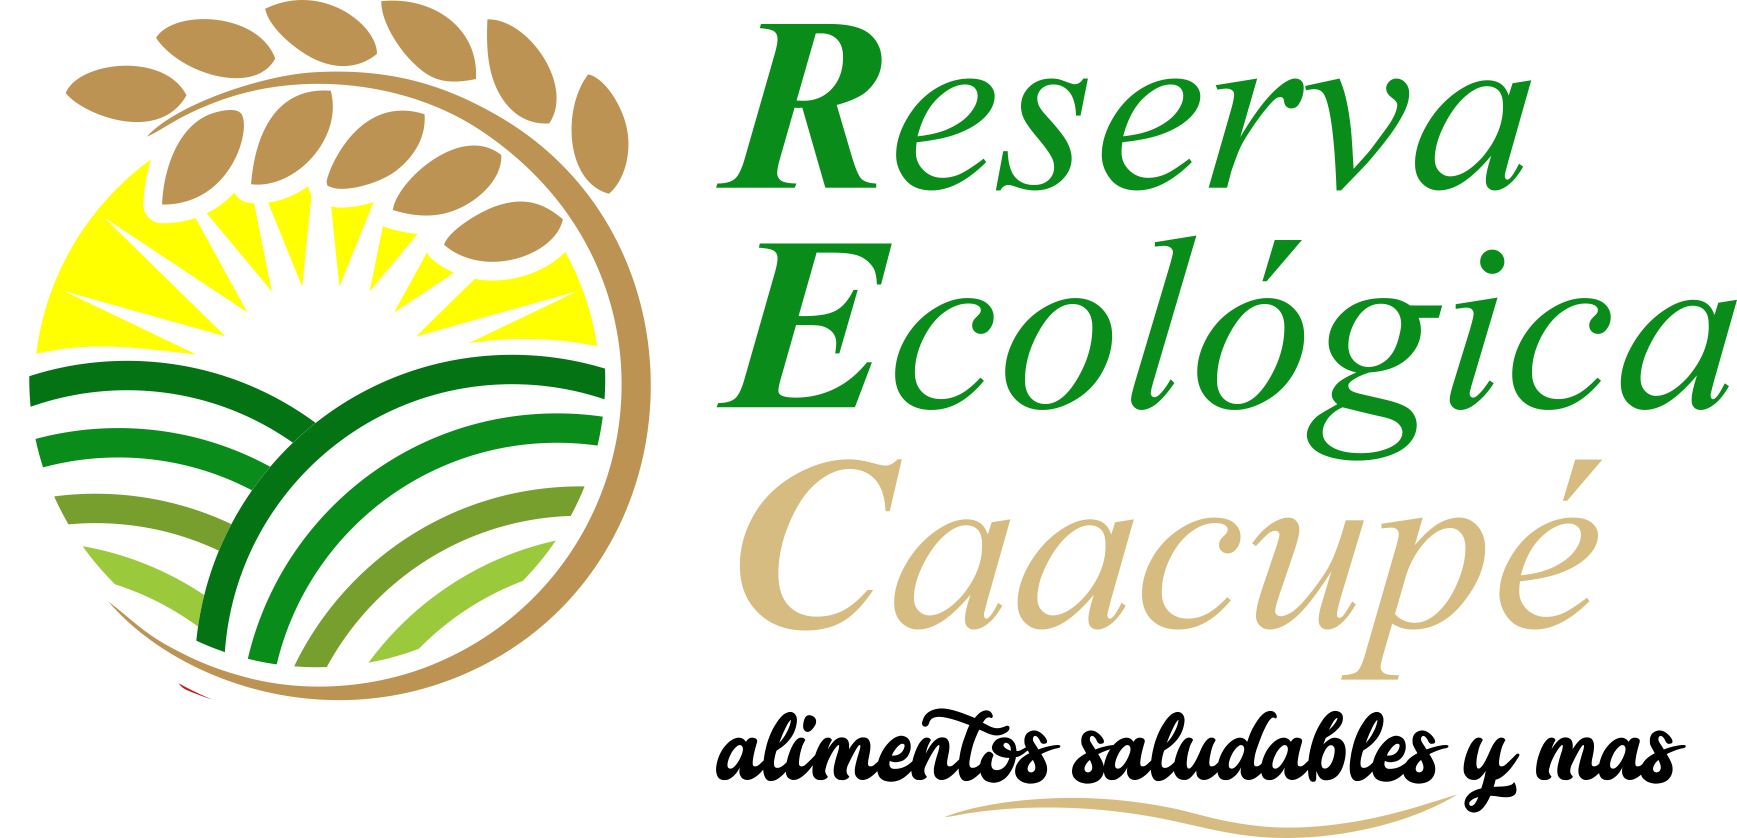 Reserva Ecológica Caacupé, alimentos saludables y mas